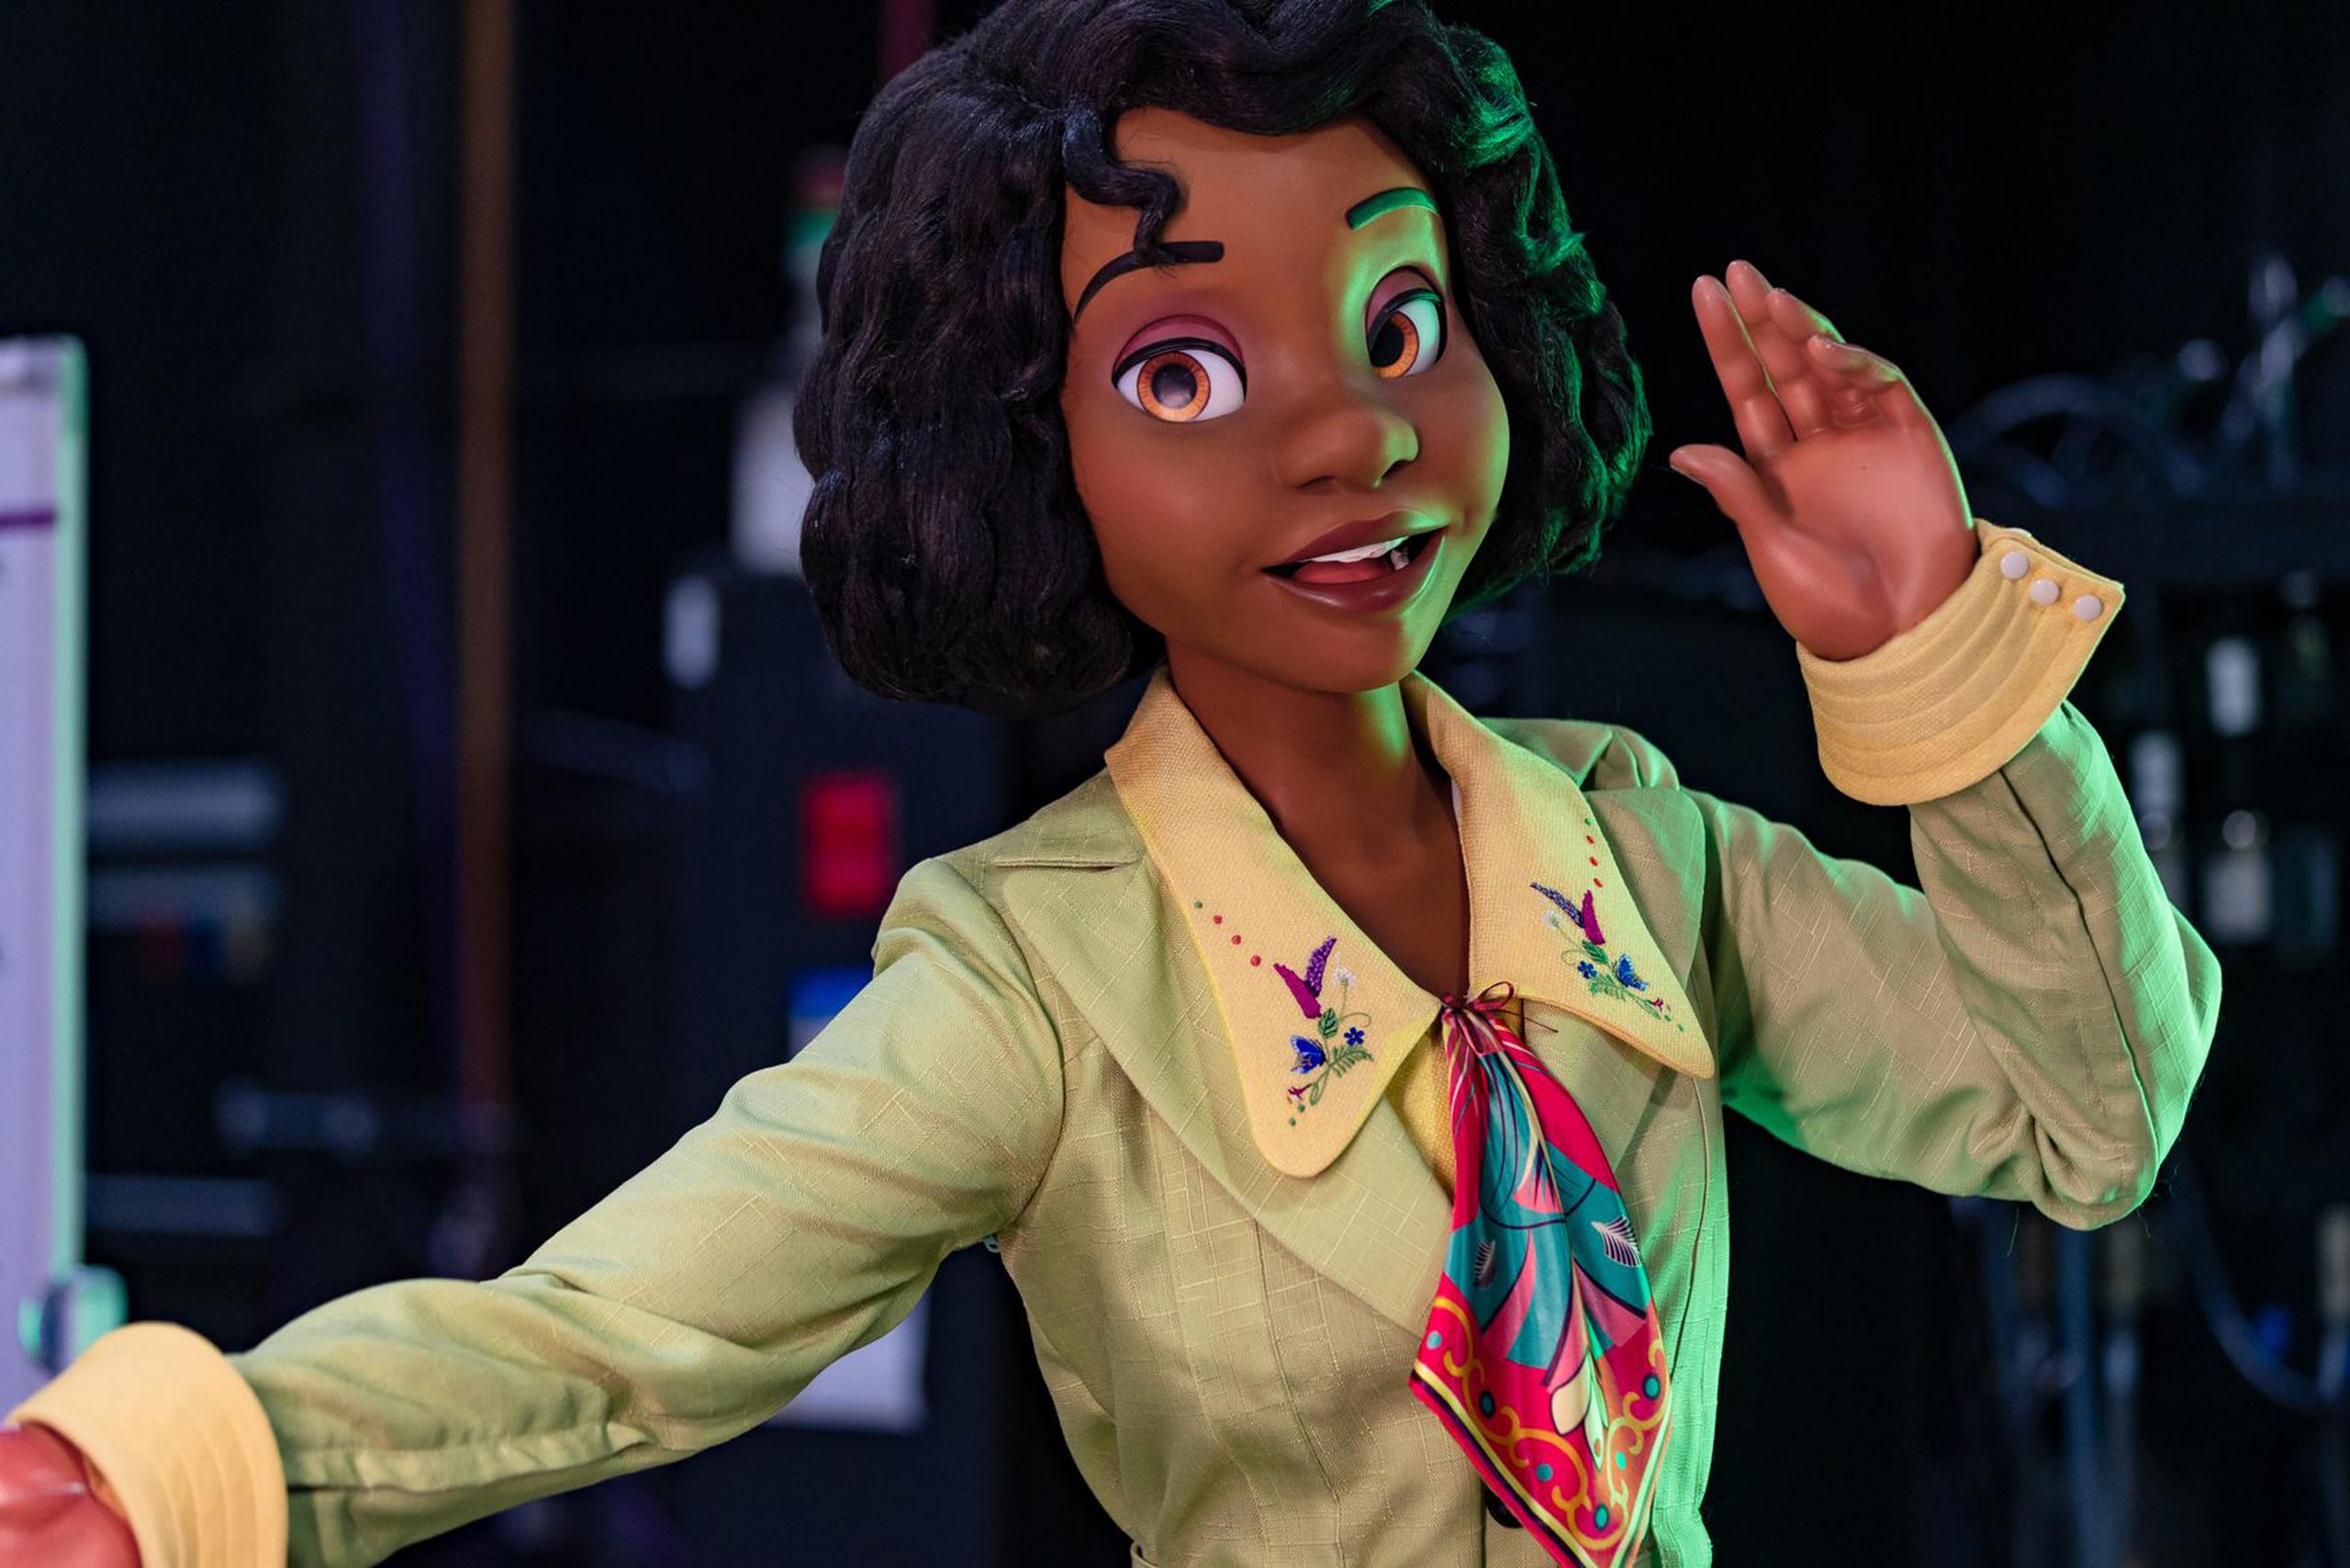 La atracción “Tiana’s Bayou Adventure” en Magic Kingdom contará con el primer "audio-animatronic" o robot de la princesa Tiana.